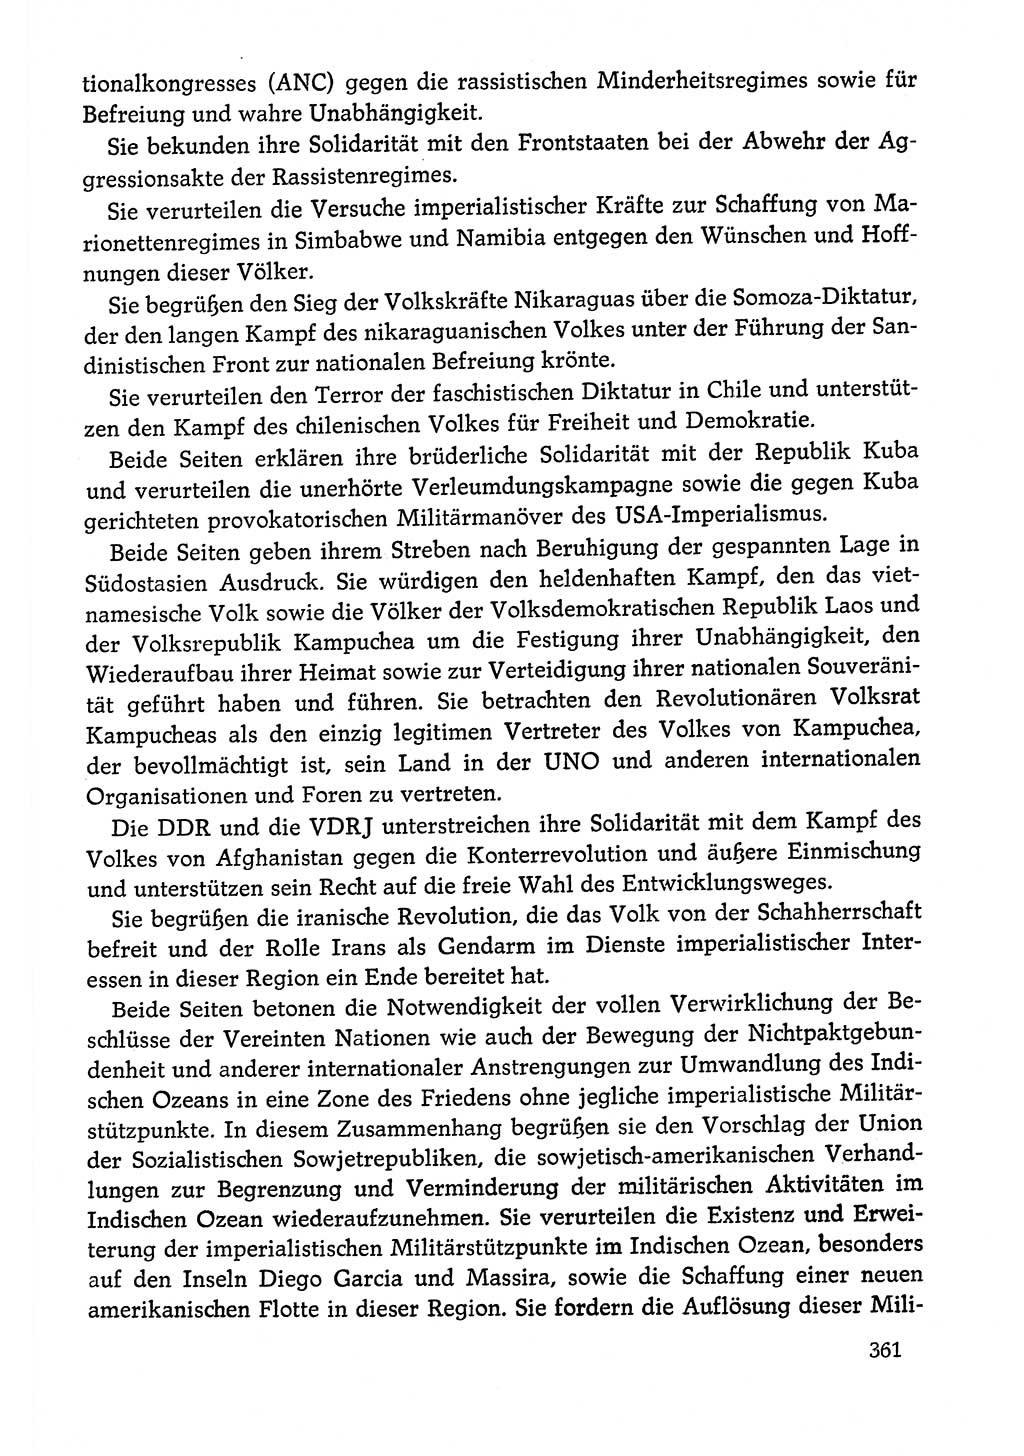 Dokumente der Sozialistischen Einheitspartei Deutschlands (SED) [Deutsche Demokratische Republik (DDR)] 1978-1979, Seite 361 (Dok. SED DDR 1978-1979, S. 361)